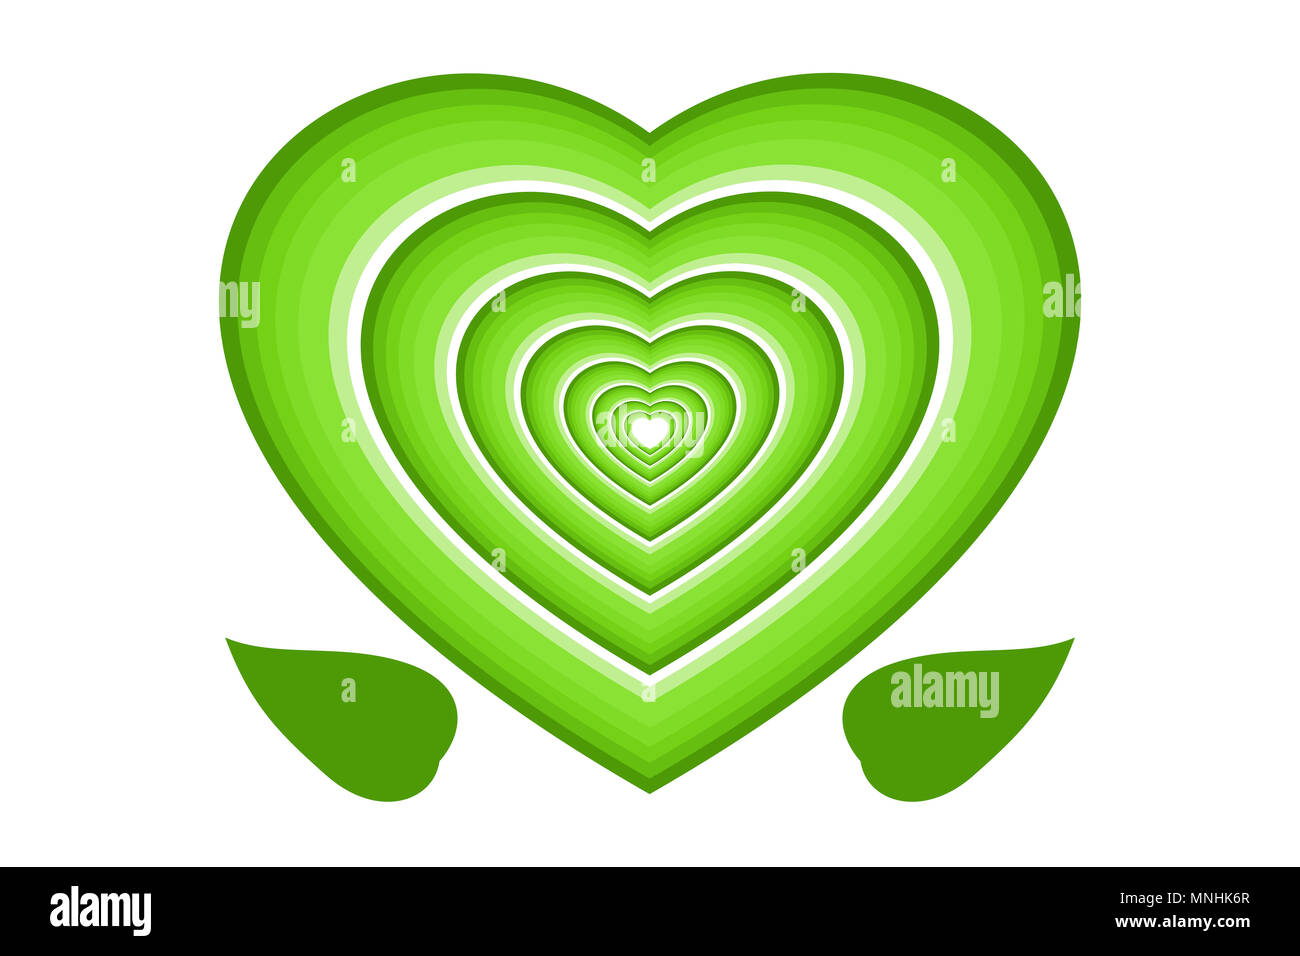 Umweltschutz Konzept. Grüne Multi layered Herzen und Blätter, auf weißem Hintergrund. Stockfoto